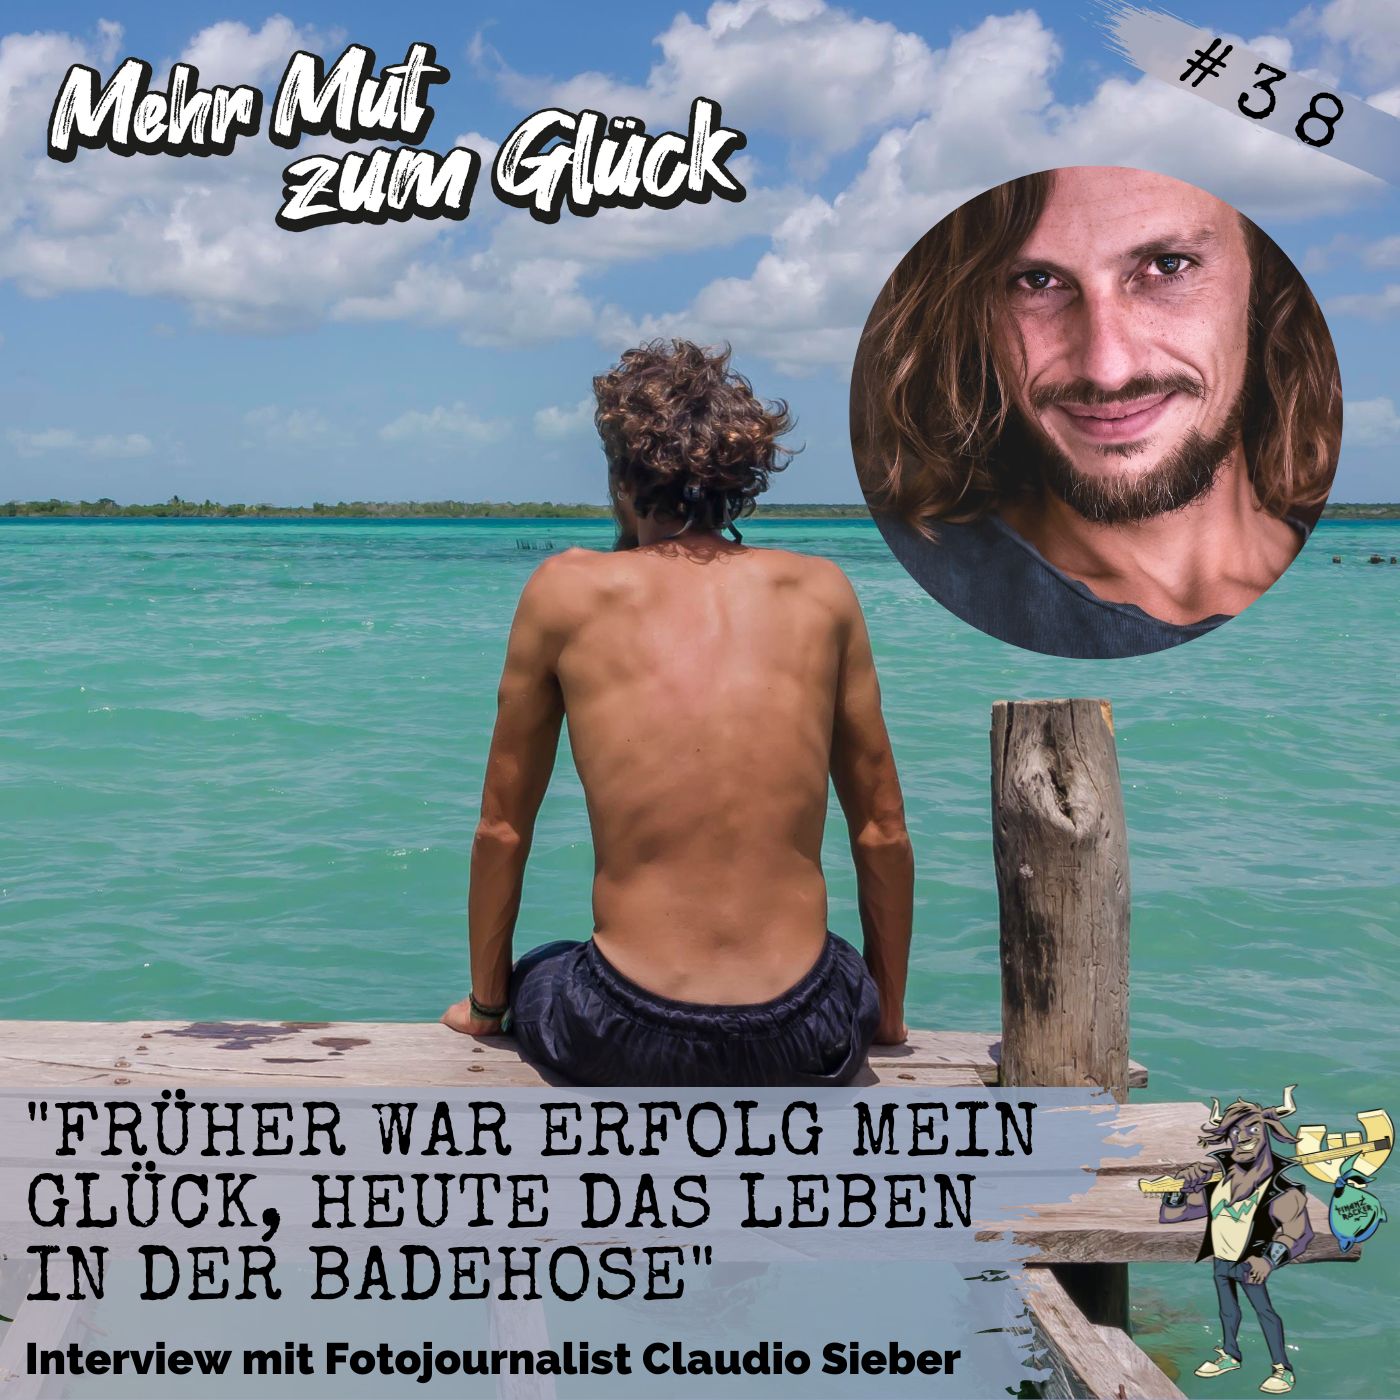 Folge 38: ”Früher war Erfolg mein Glück, heute das Leben in der Badehose” - Interview mit Fotojournalist Claudio Sieber